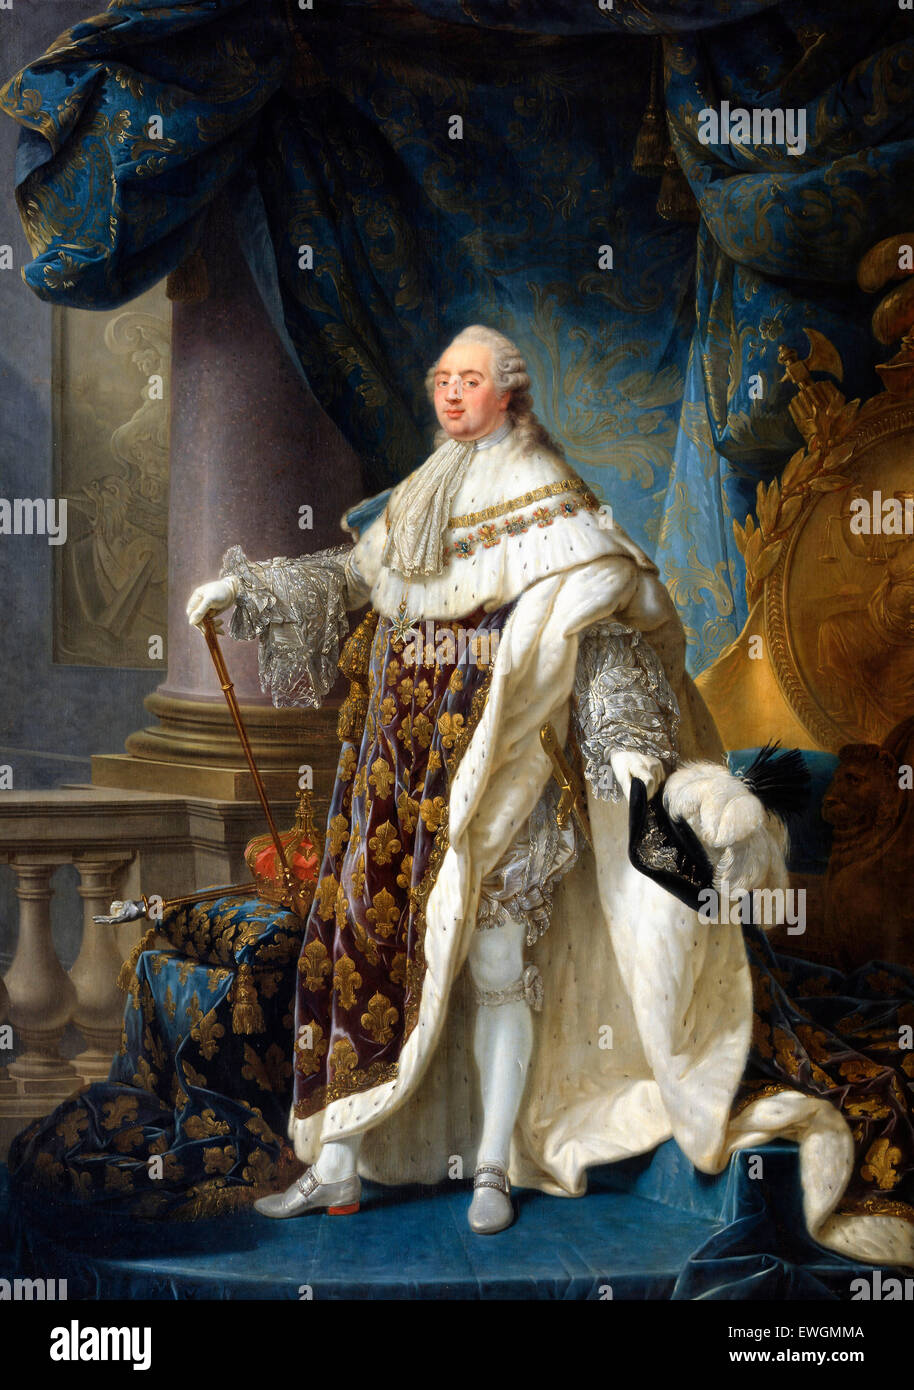 Francese: Louis XVI, roi de France et de Navarre (1754 - 1793), revêtu du grand royal costume en 1779 Louis XVI, re di Francia e Navarra (1754 - 1793), indossa il suo grand royal costume in 1779 Antoine Callet Foto Stock